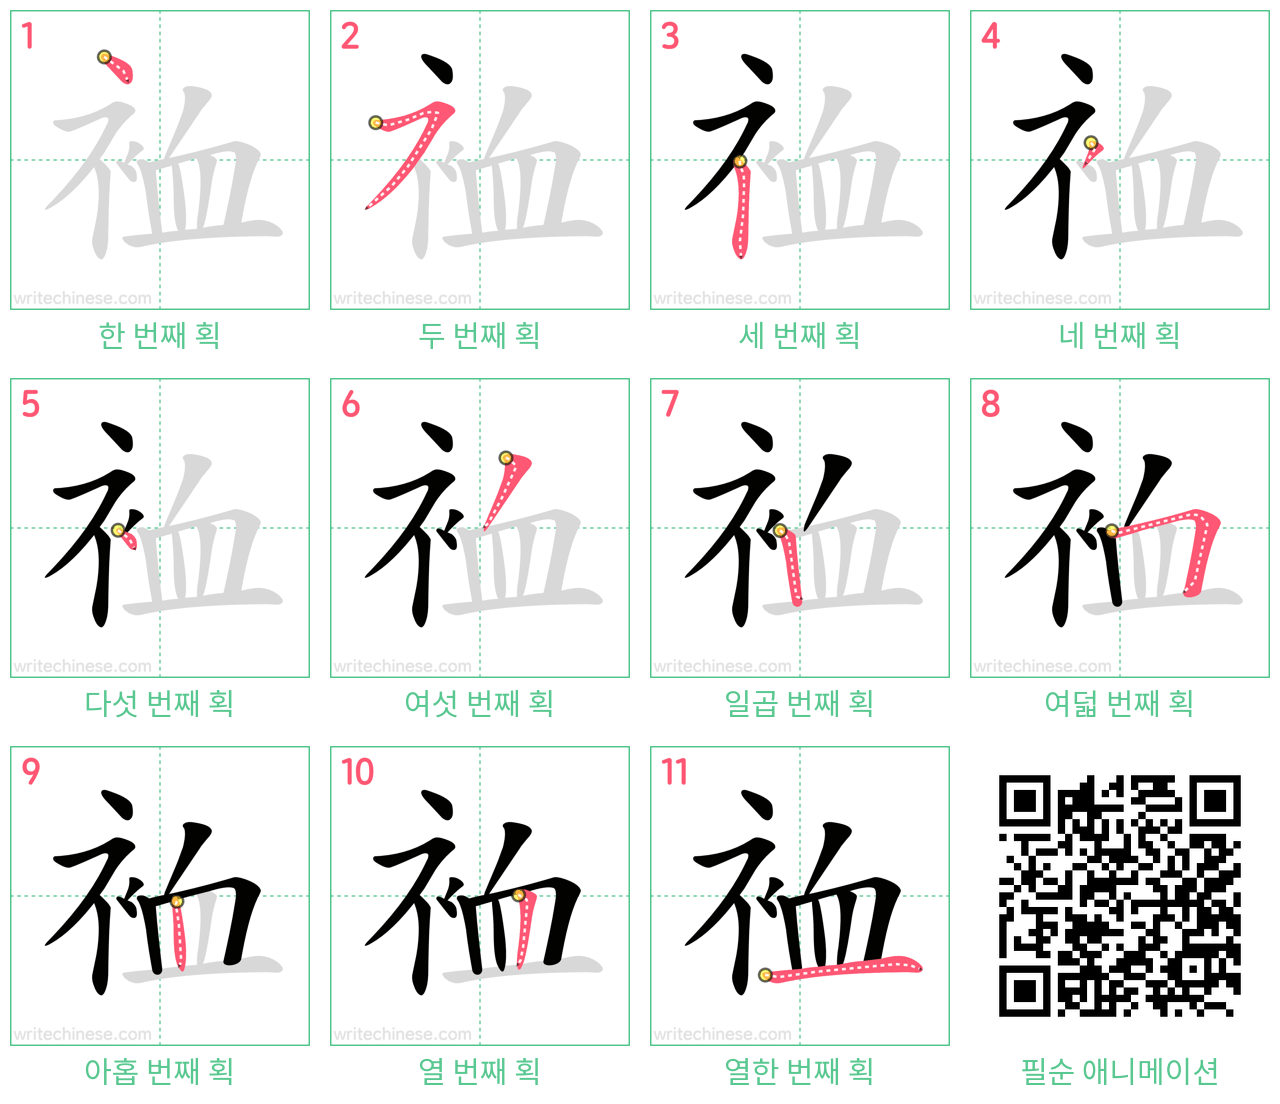 裇 step-by-step stroke order diagrams